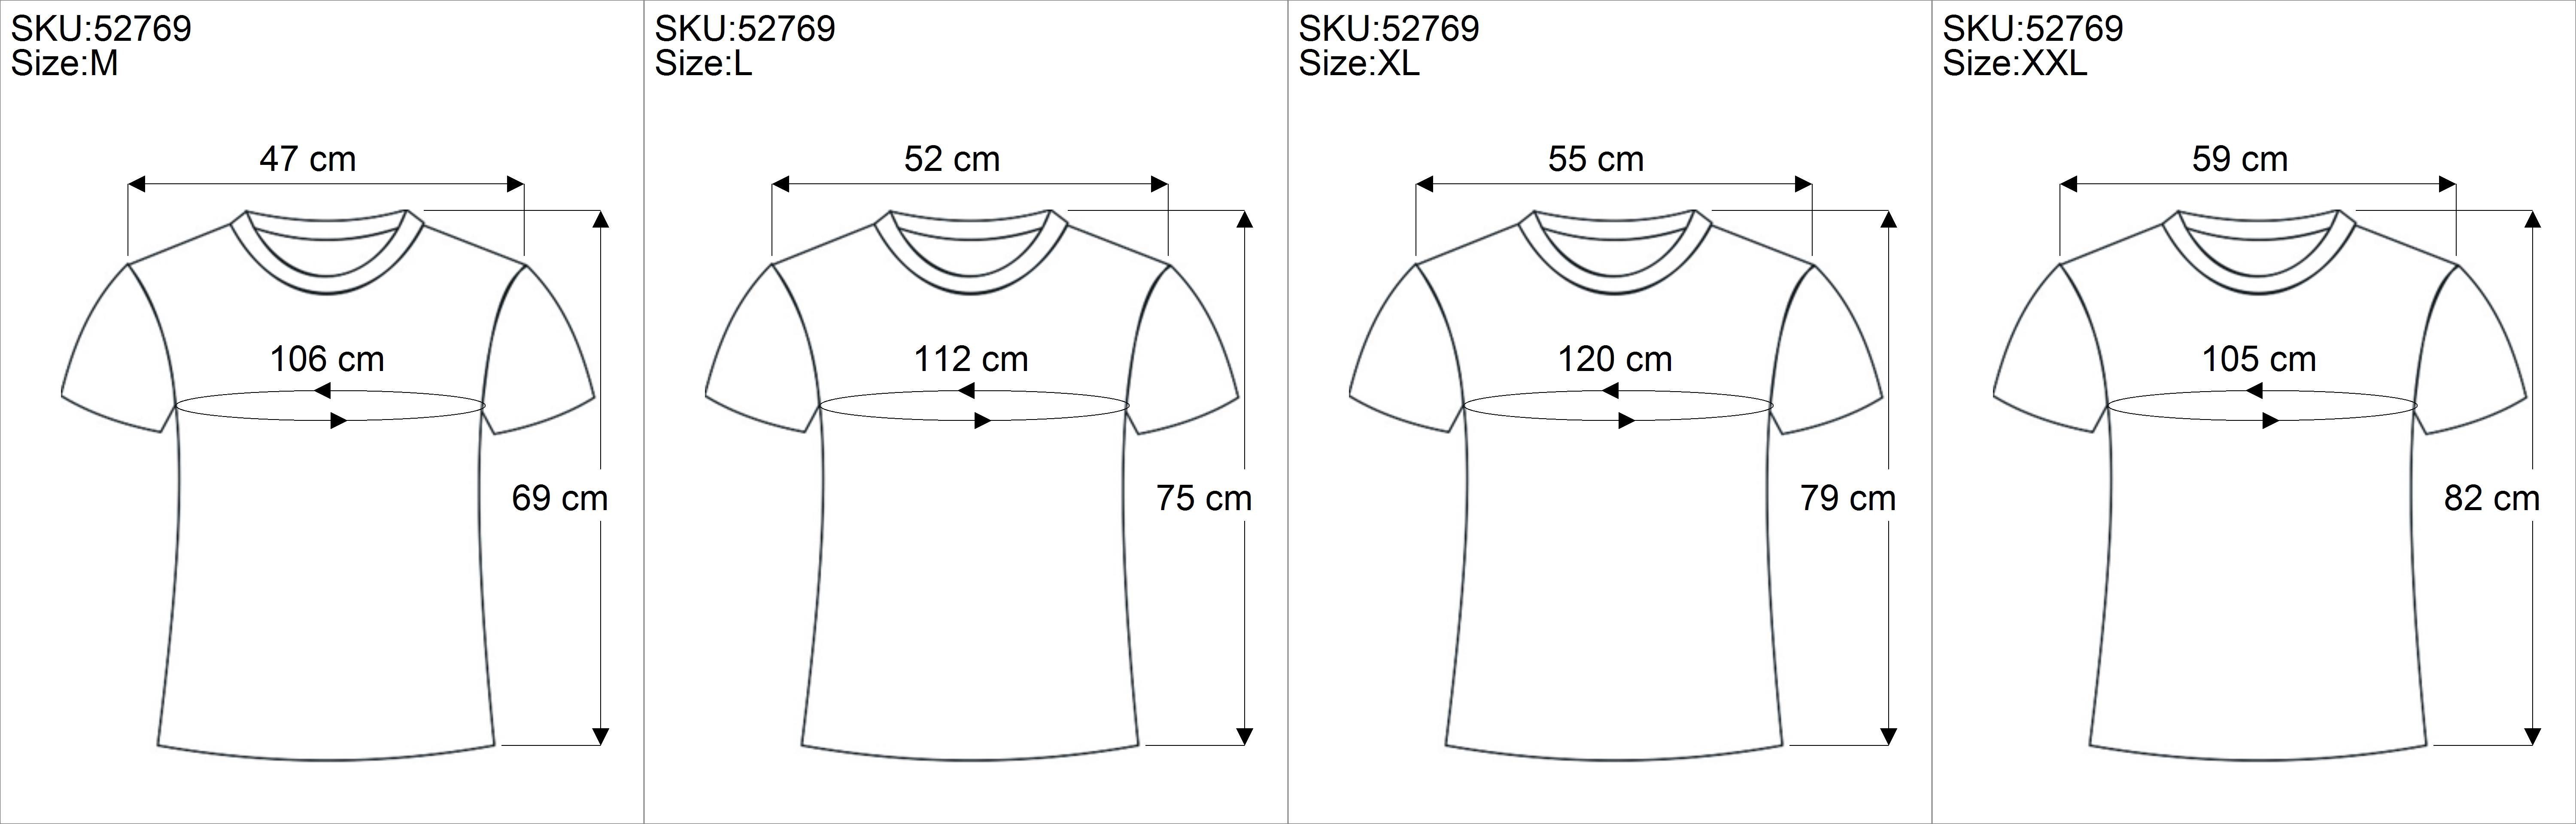 T-Shirt Ice/aqua Retro Guru-Shop Tree - Retro save T-Shirt, T-Shirt earth